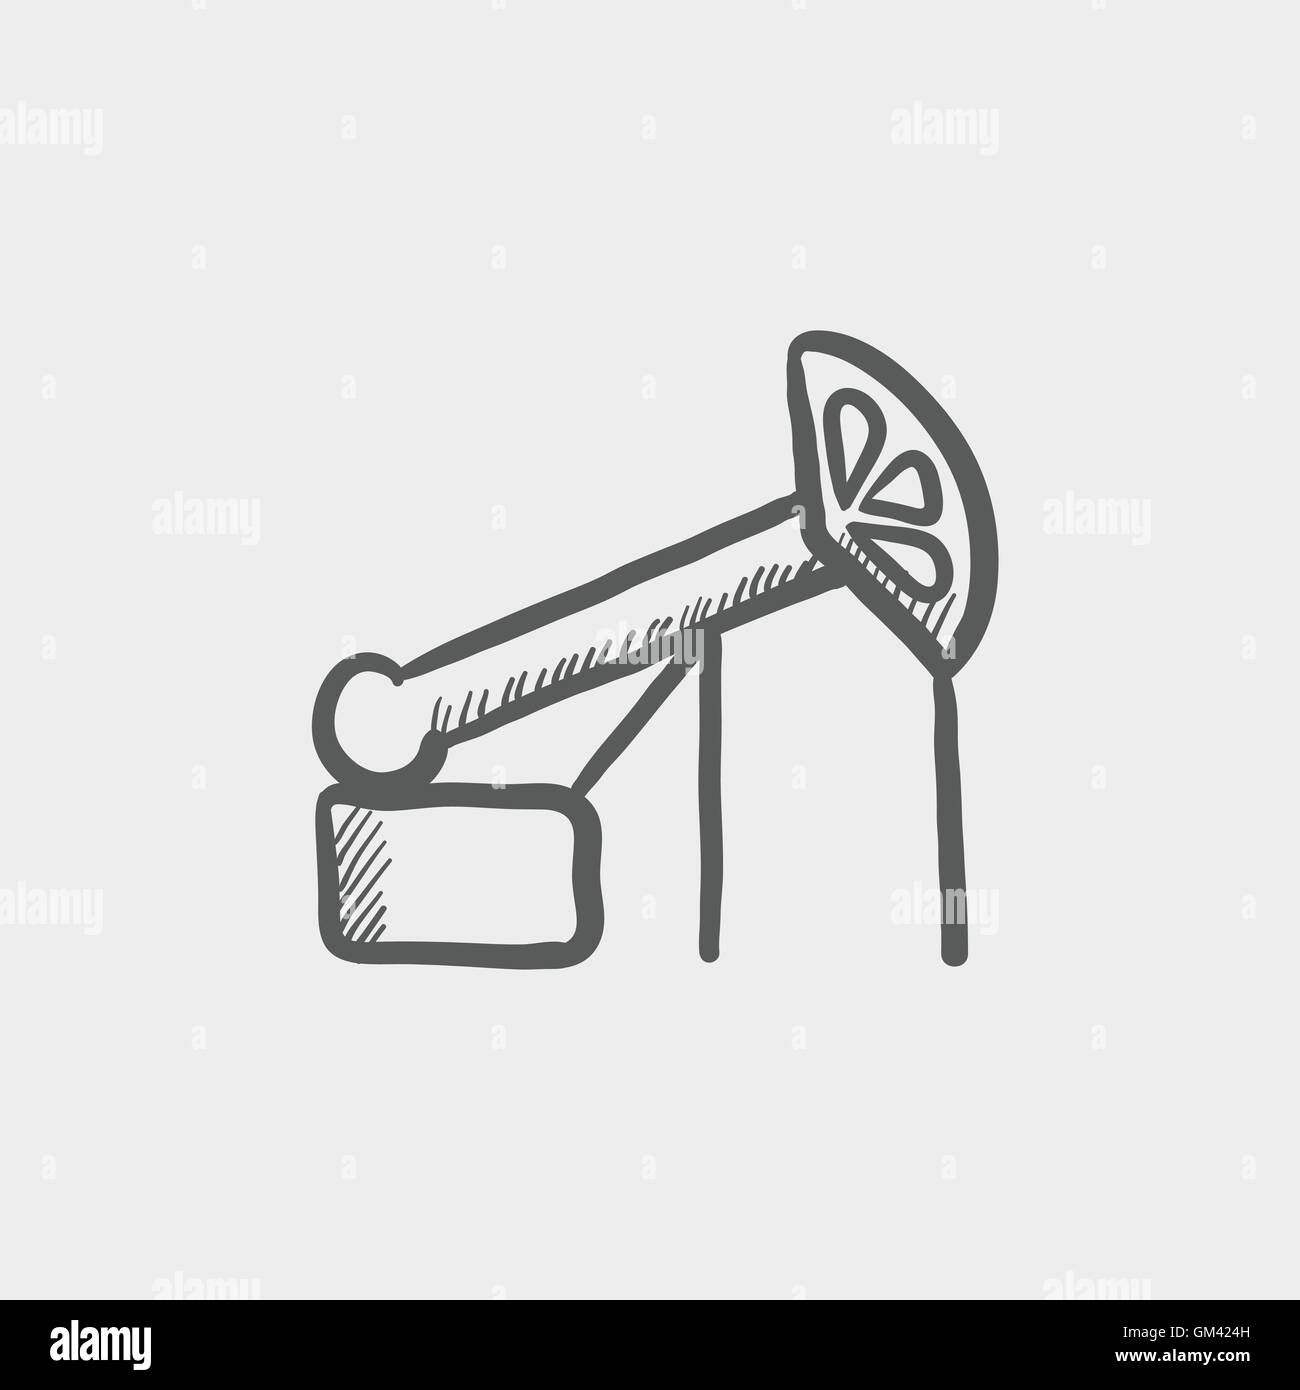 Pump jack oil crane sketch icon Stock Vector